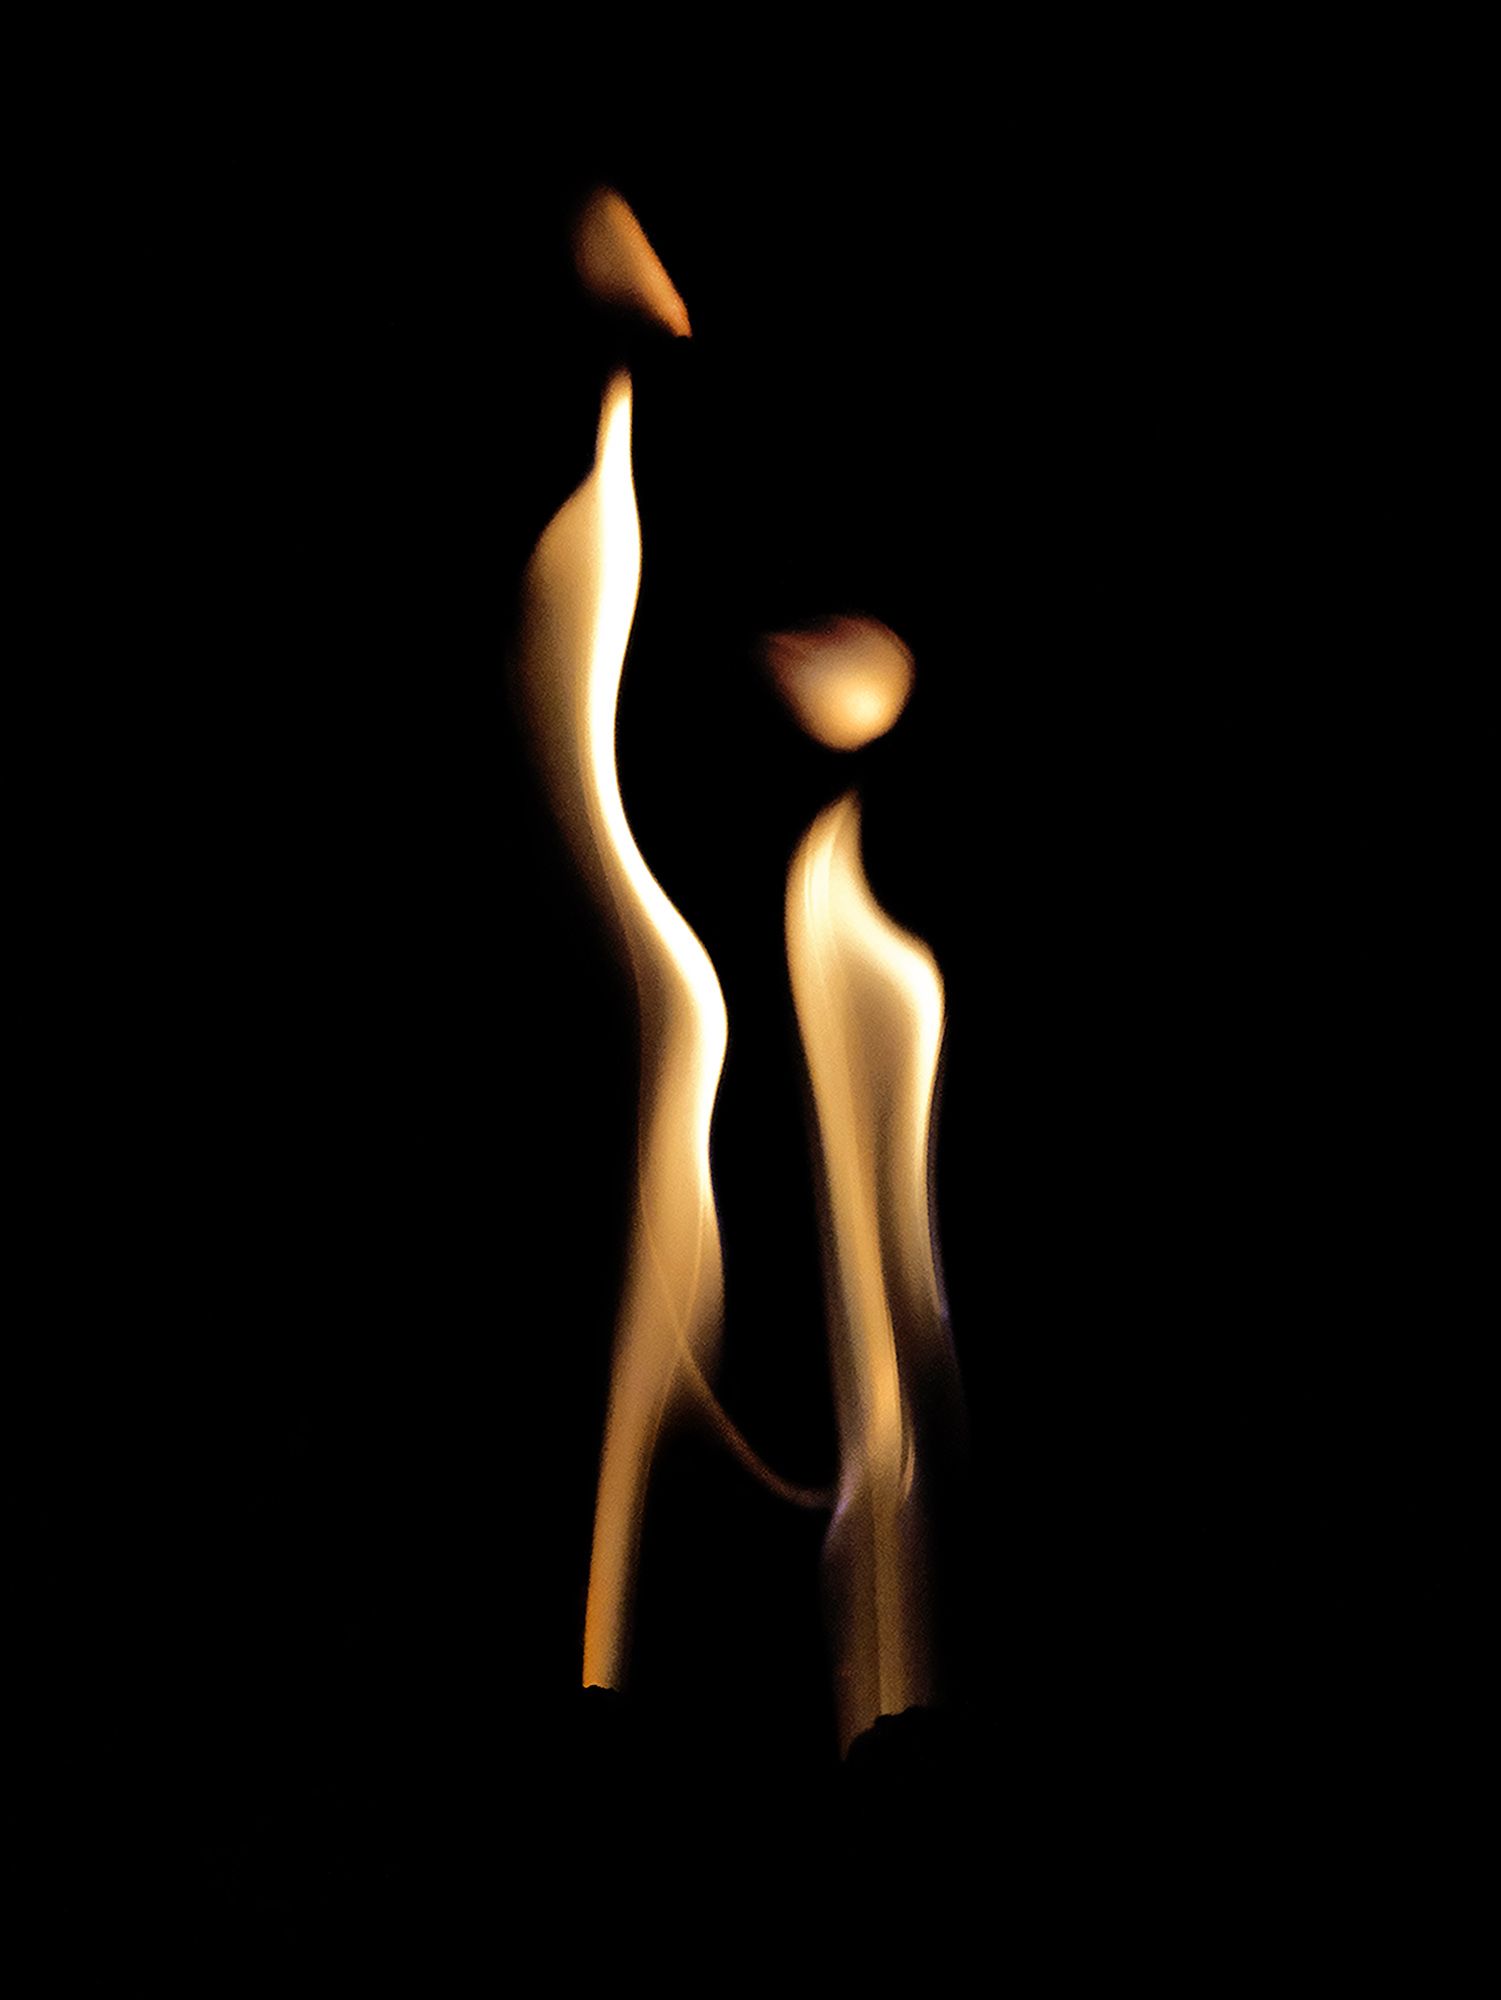 Spirit of the Fire #5 ©2021 L. Aviva Diamond